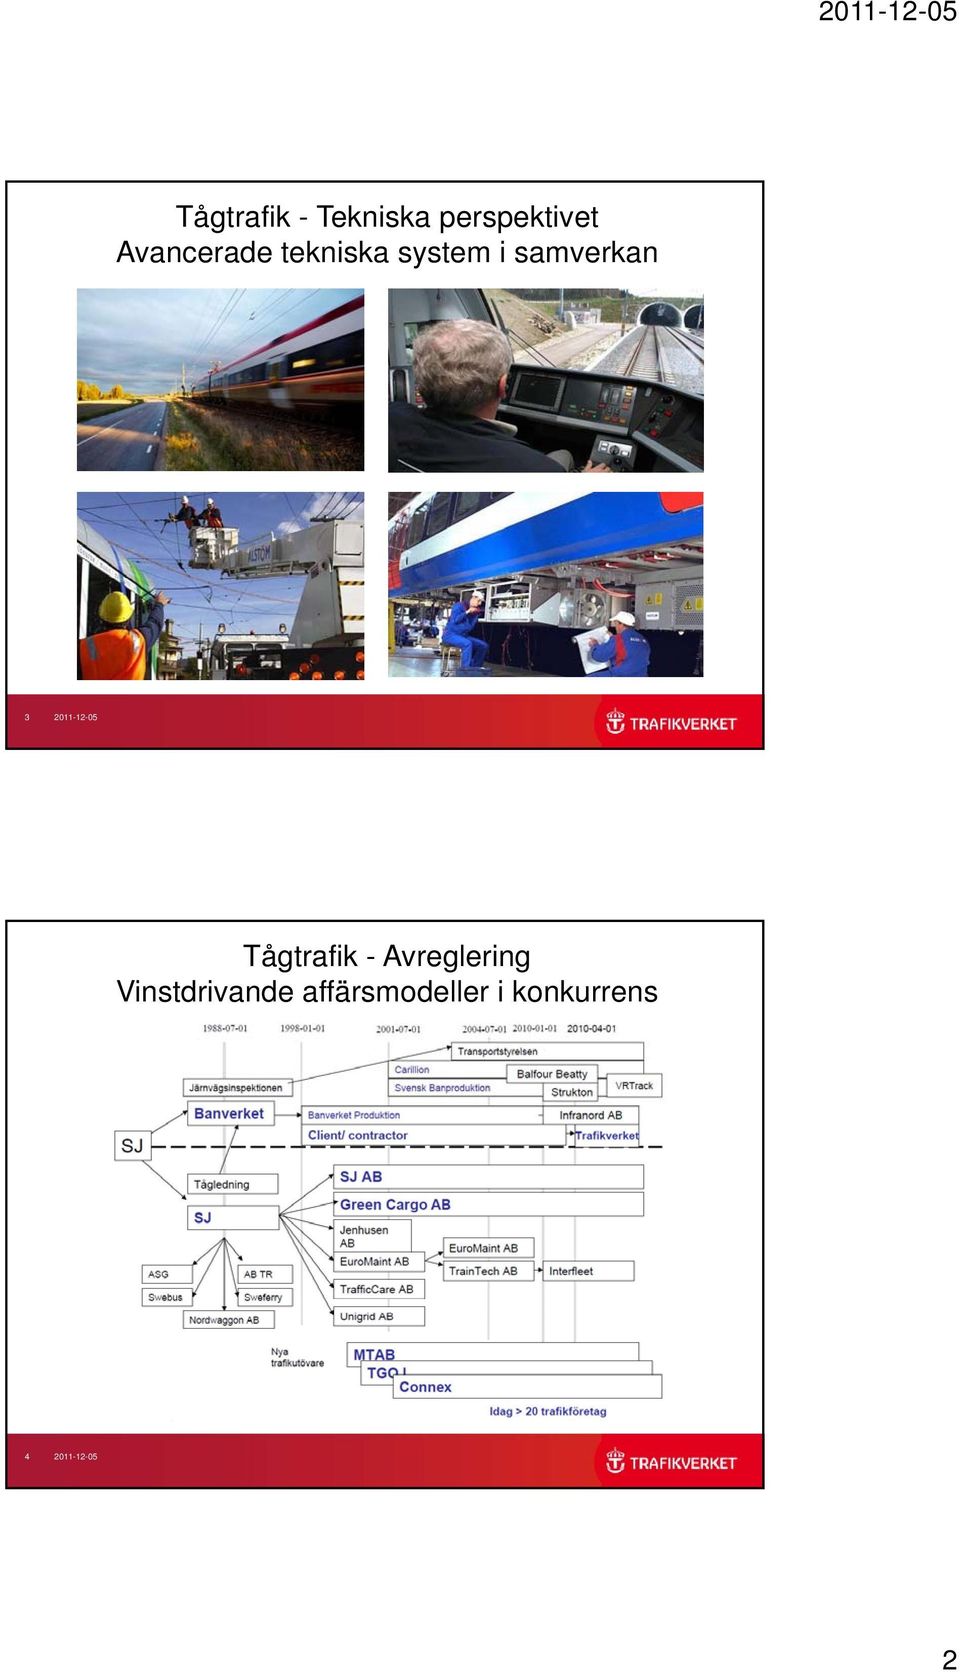 2011-12-05 Tågtrafik - Avreglering